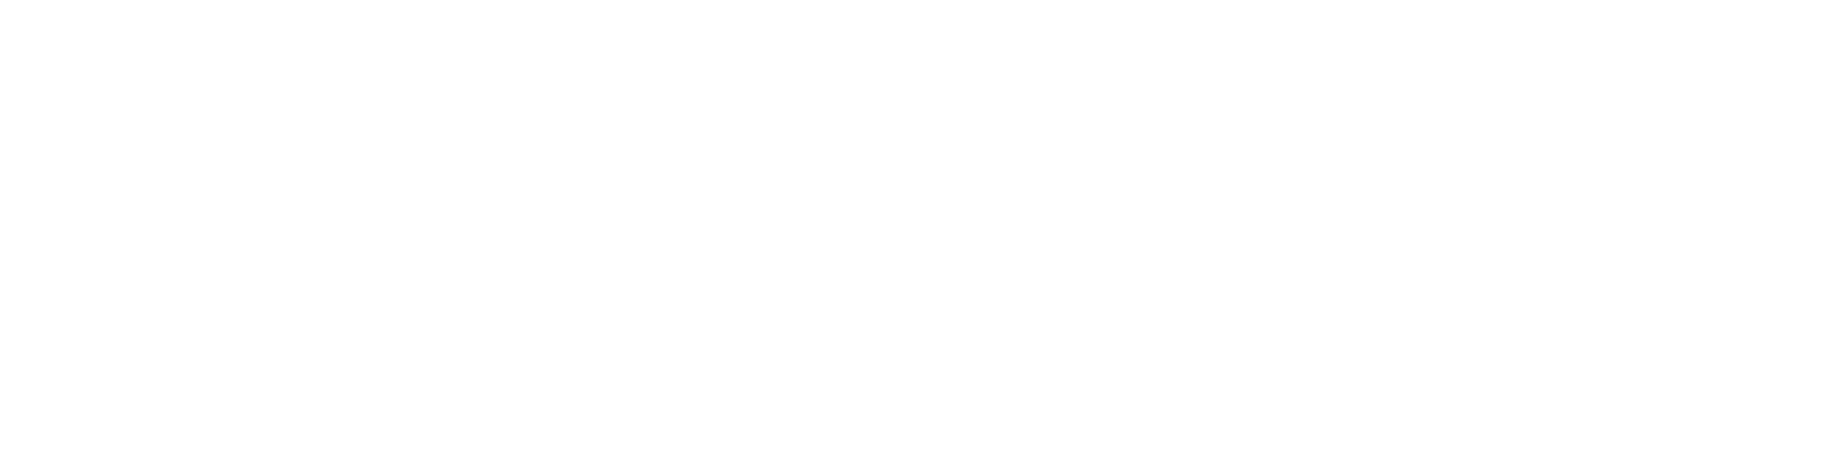 Seberg logo